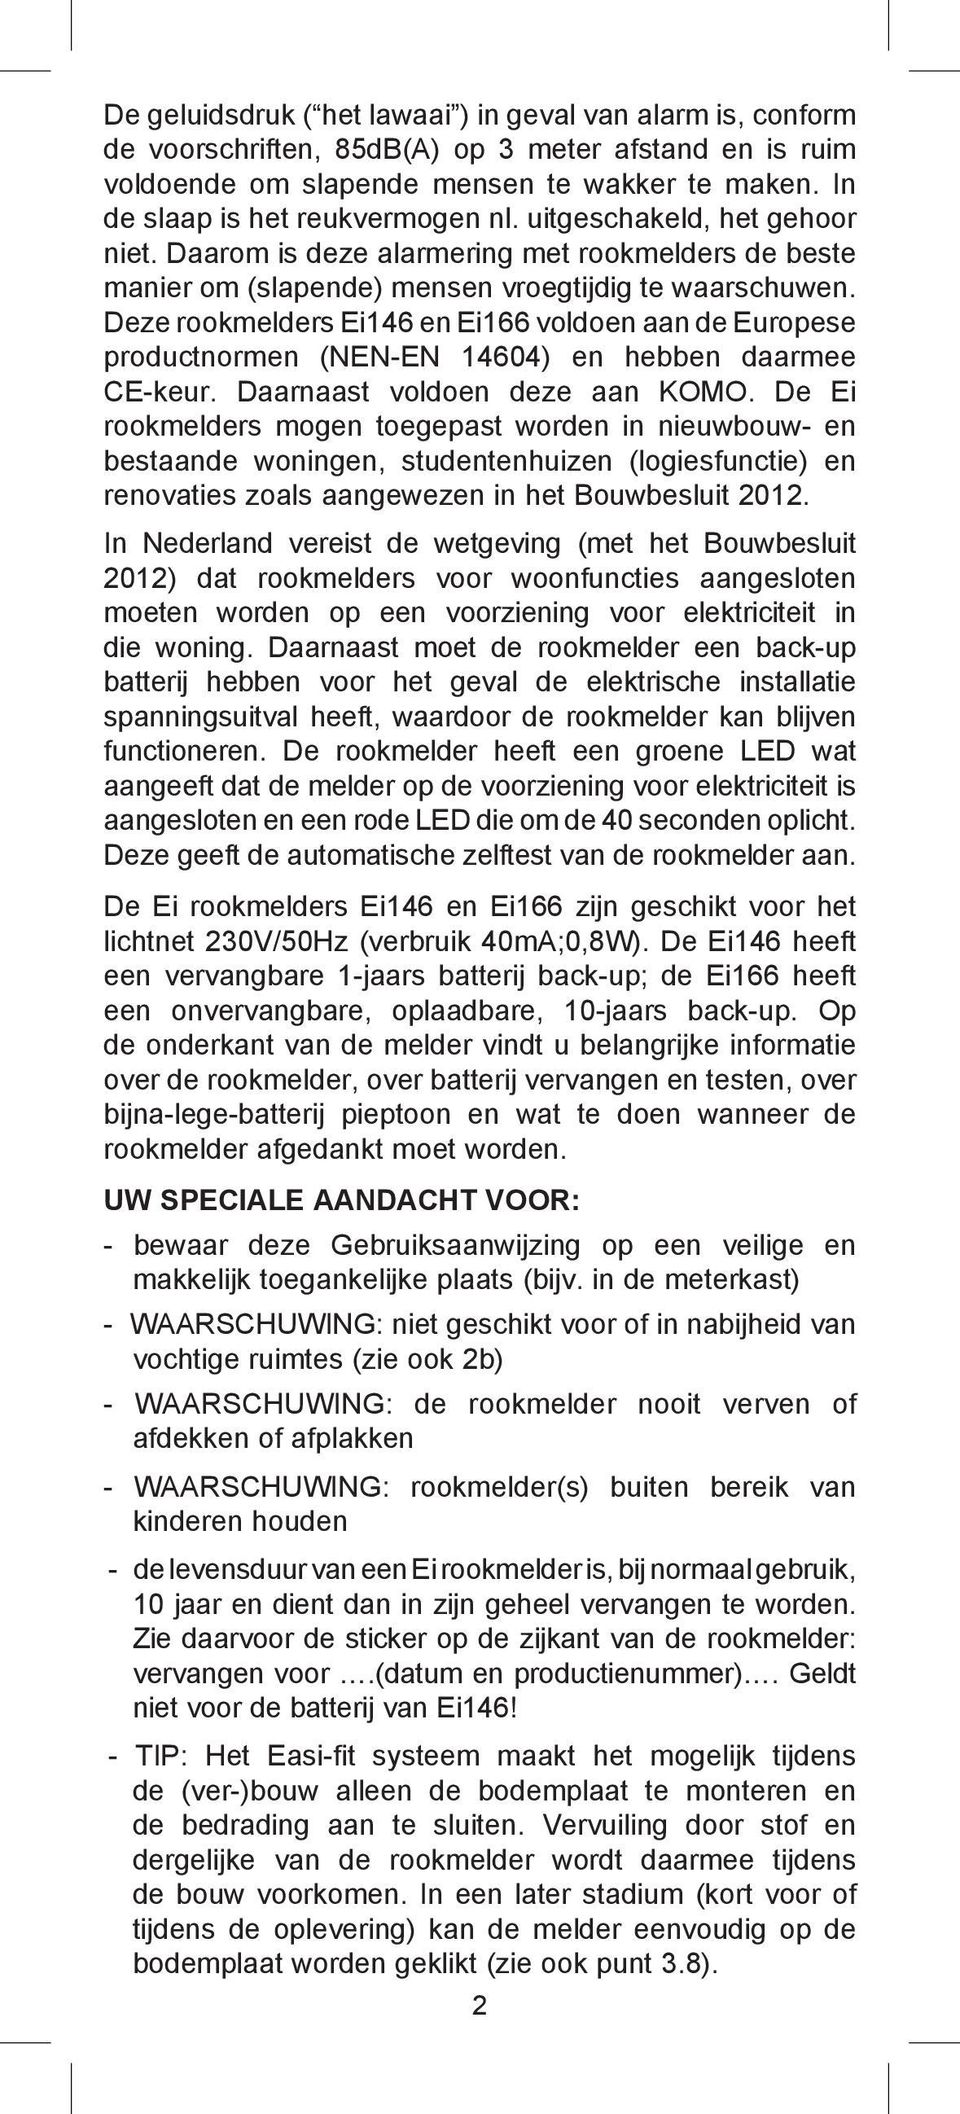 Deze rookmelders Ei146 en Ei166 voldoen aan de Europese productnormen (NEN-EN 14604) en hebben daarmee CE-keur. Daarnaast voldoen deze aan KOMO.